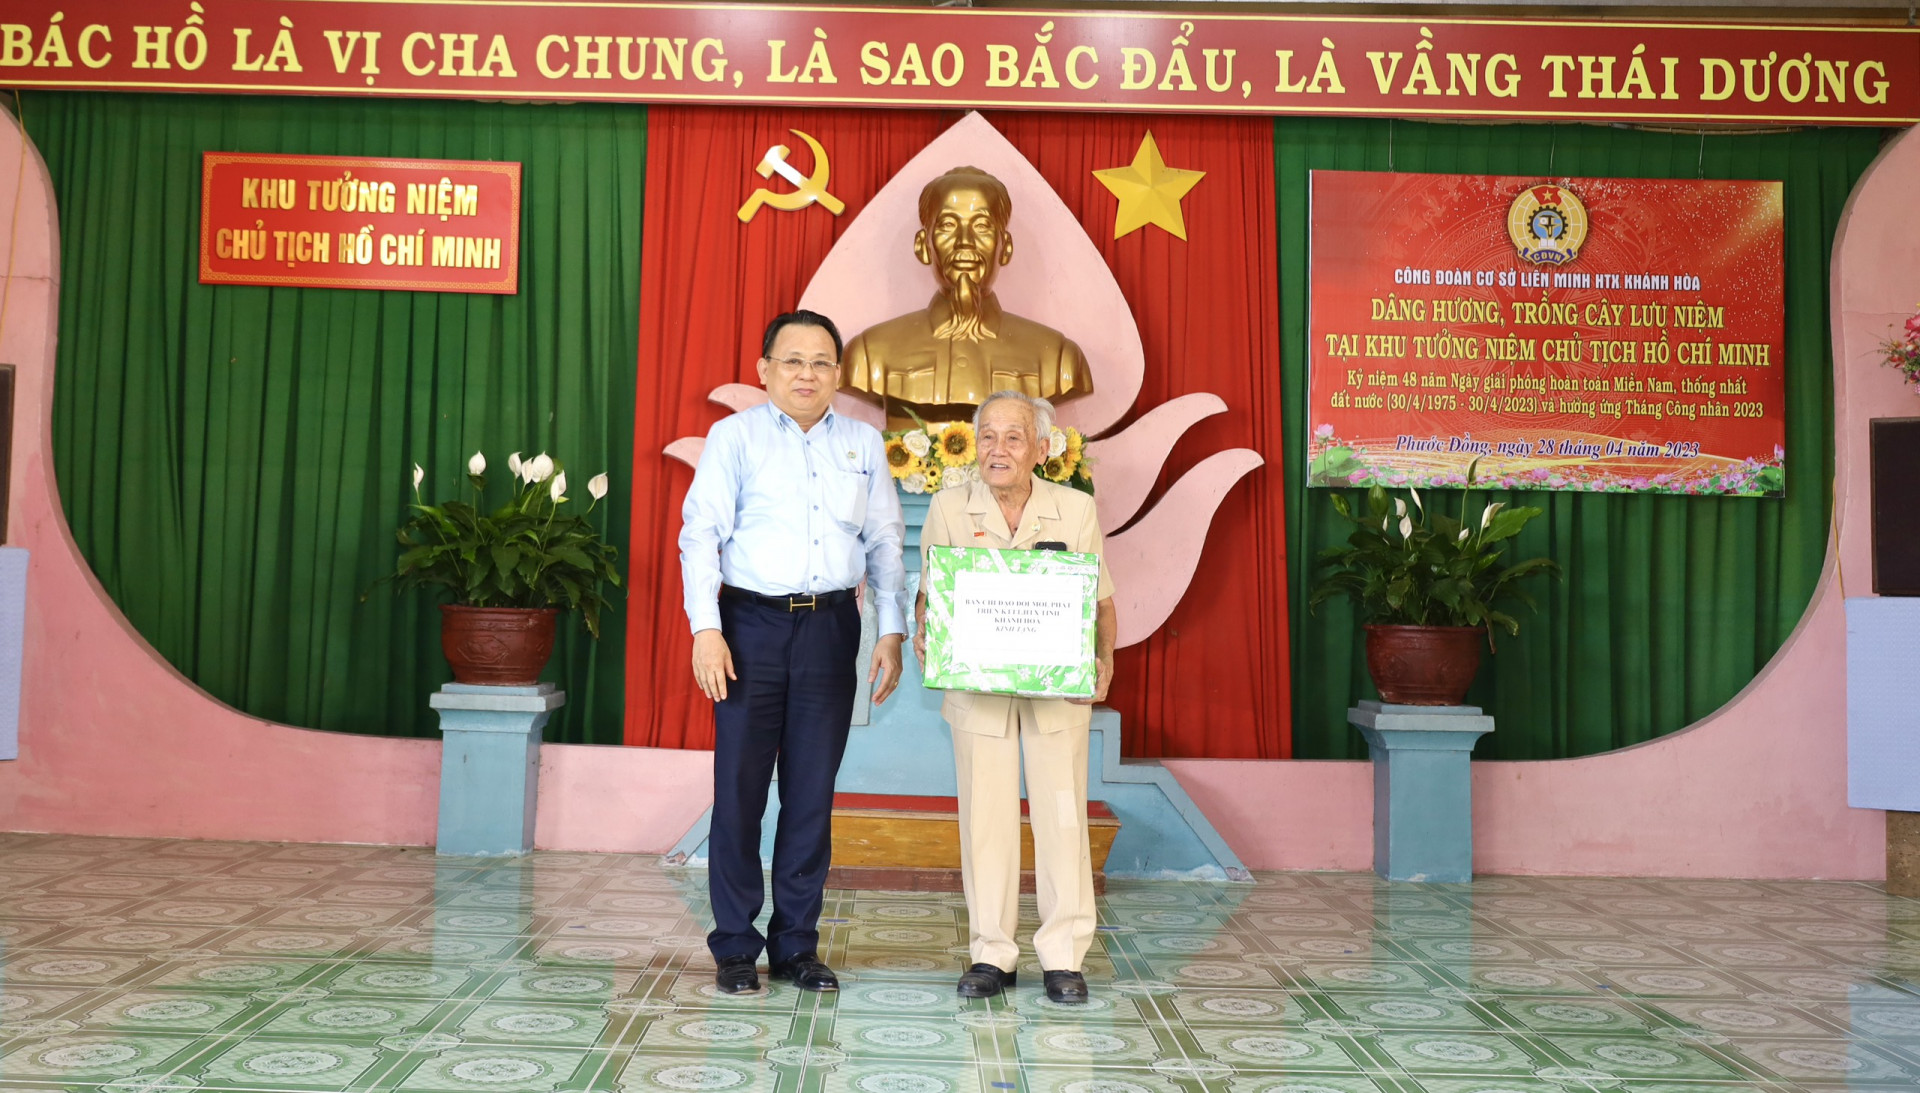 3. Ông Lê Hữu Hoàng - Ủy viên Ban Thường vụ Tỉnh ủy, Phó Chủ tịch Thường trực UBND tỉnh (bên trái) tặng quà cho cụ Bùi Xuân Phước.